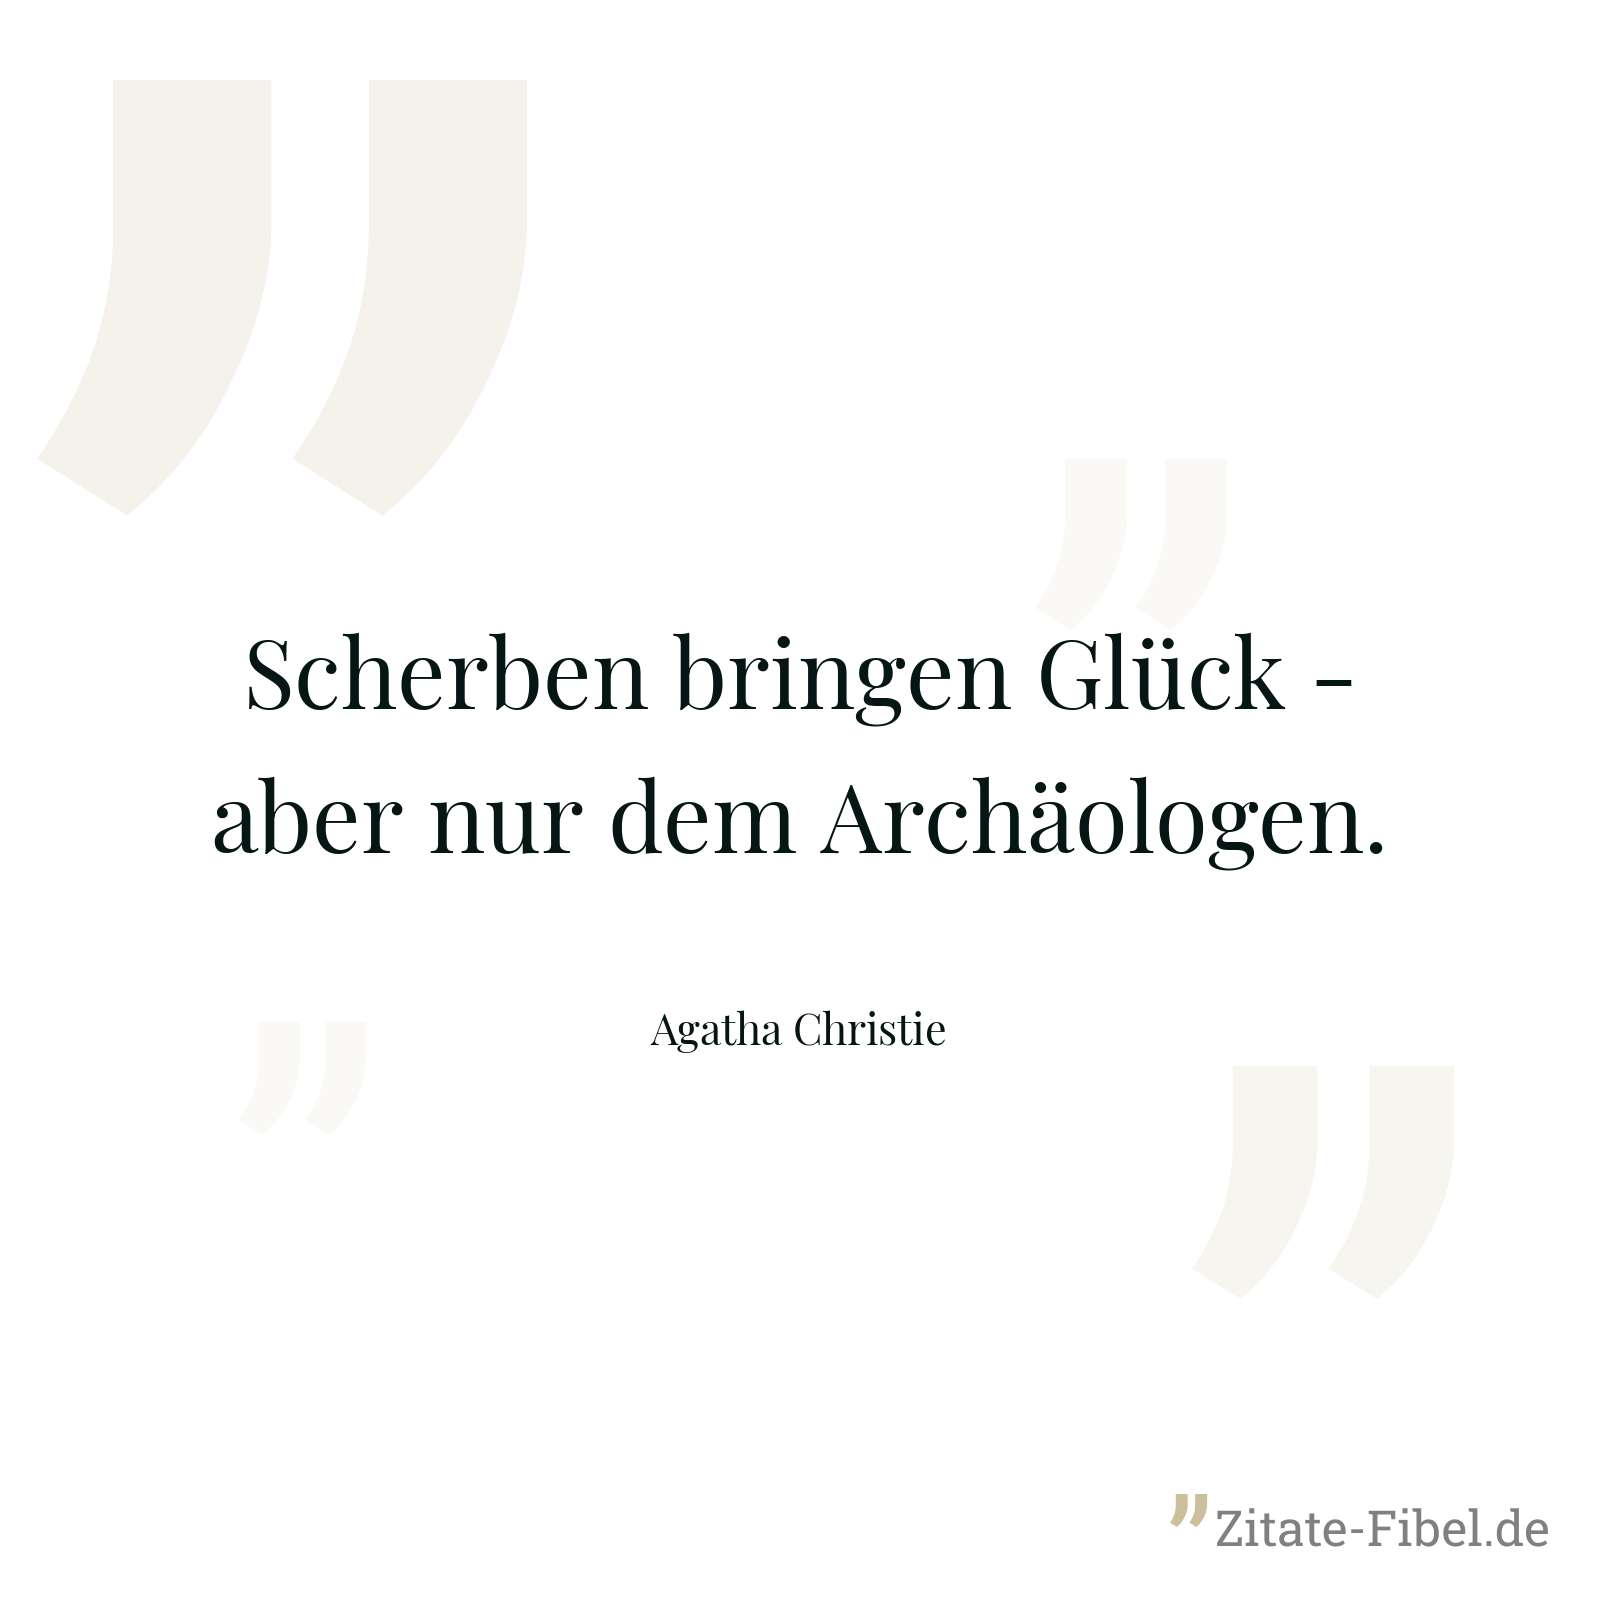 Scherben bringen Glück - aber nur dem Archäologen. - Agatha Christie